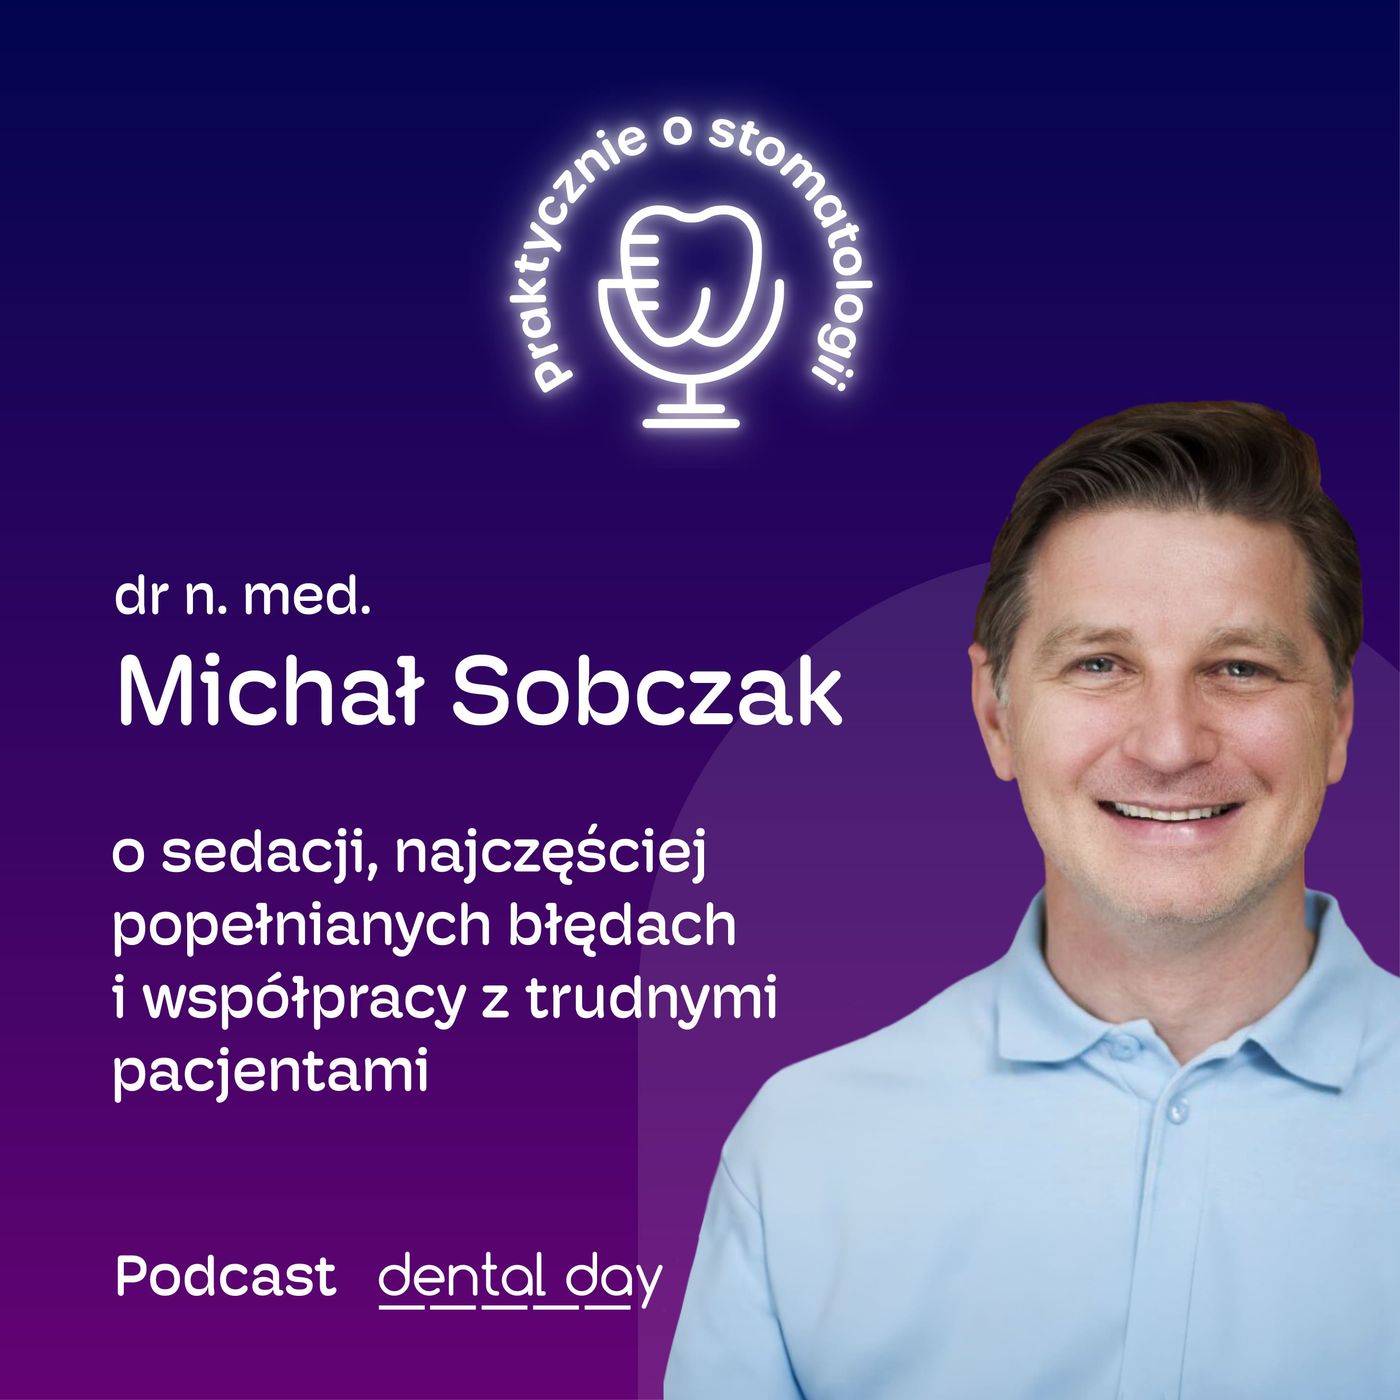 Dr n. med. Michał Sobczak: o sedacji, najczęściej popełnianych błędach i współpracy z trudnymi pacjentami